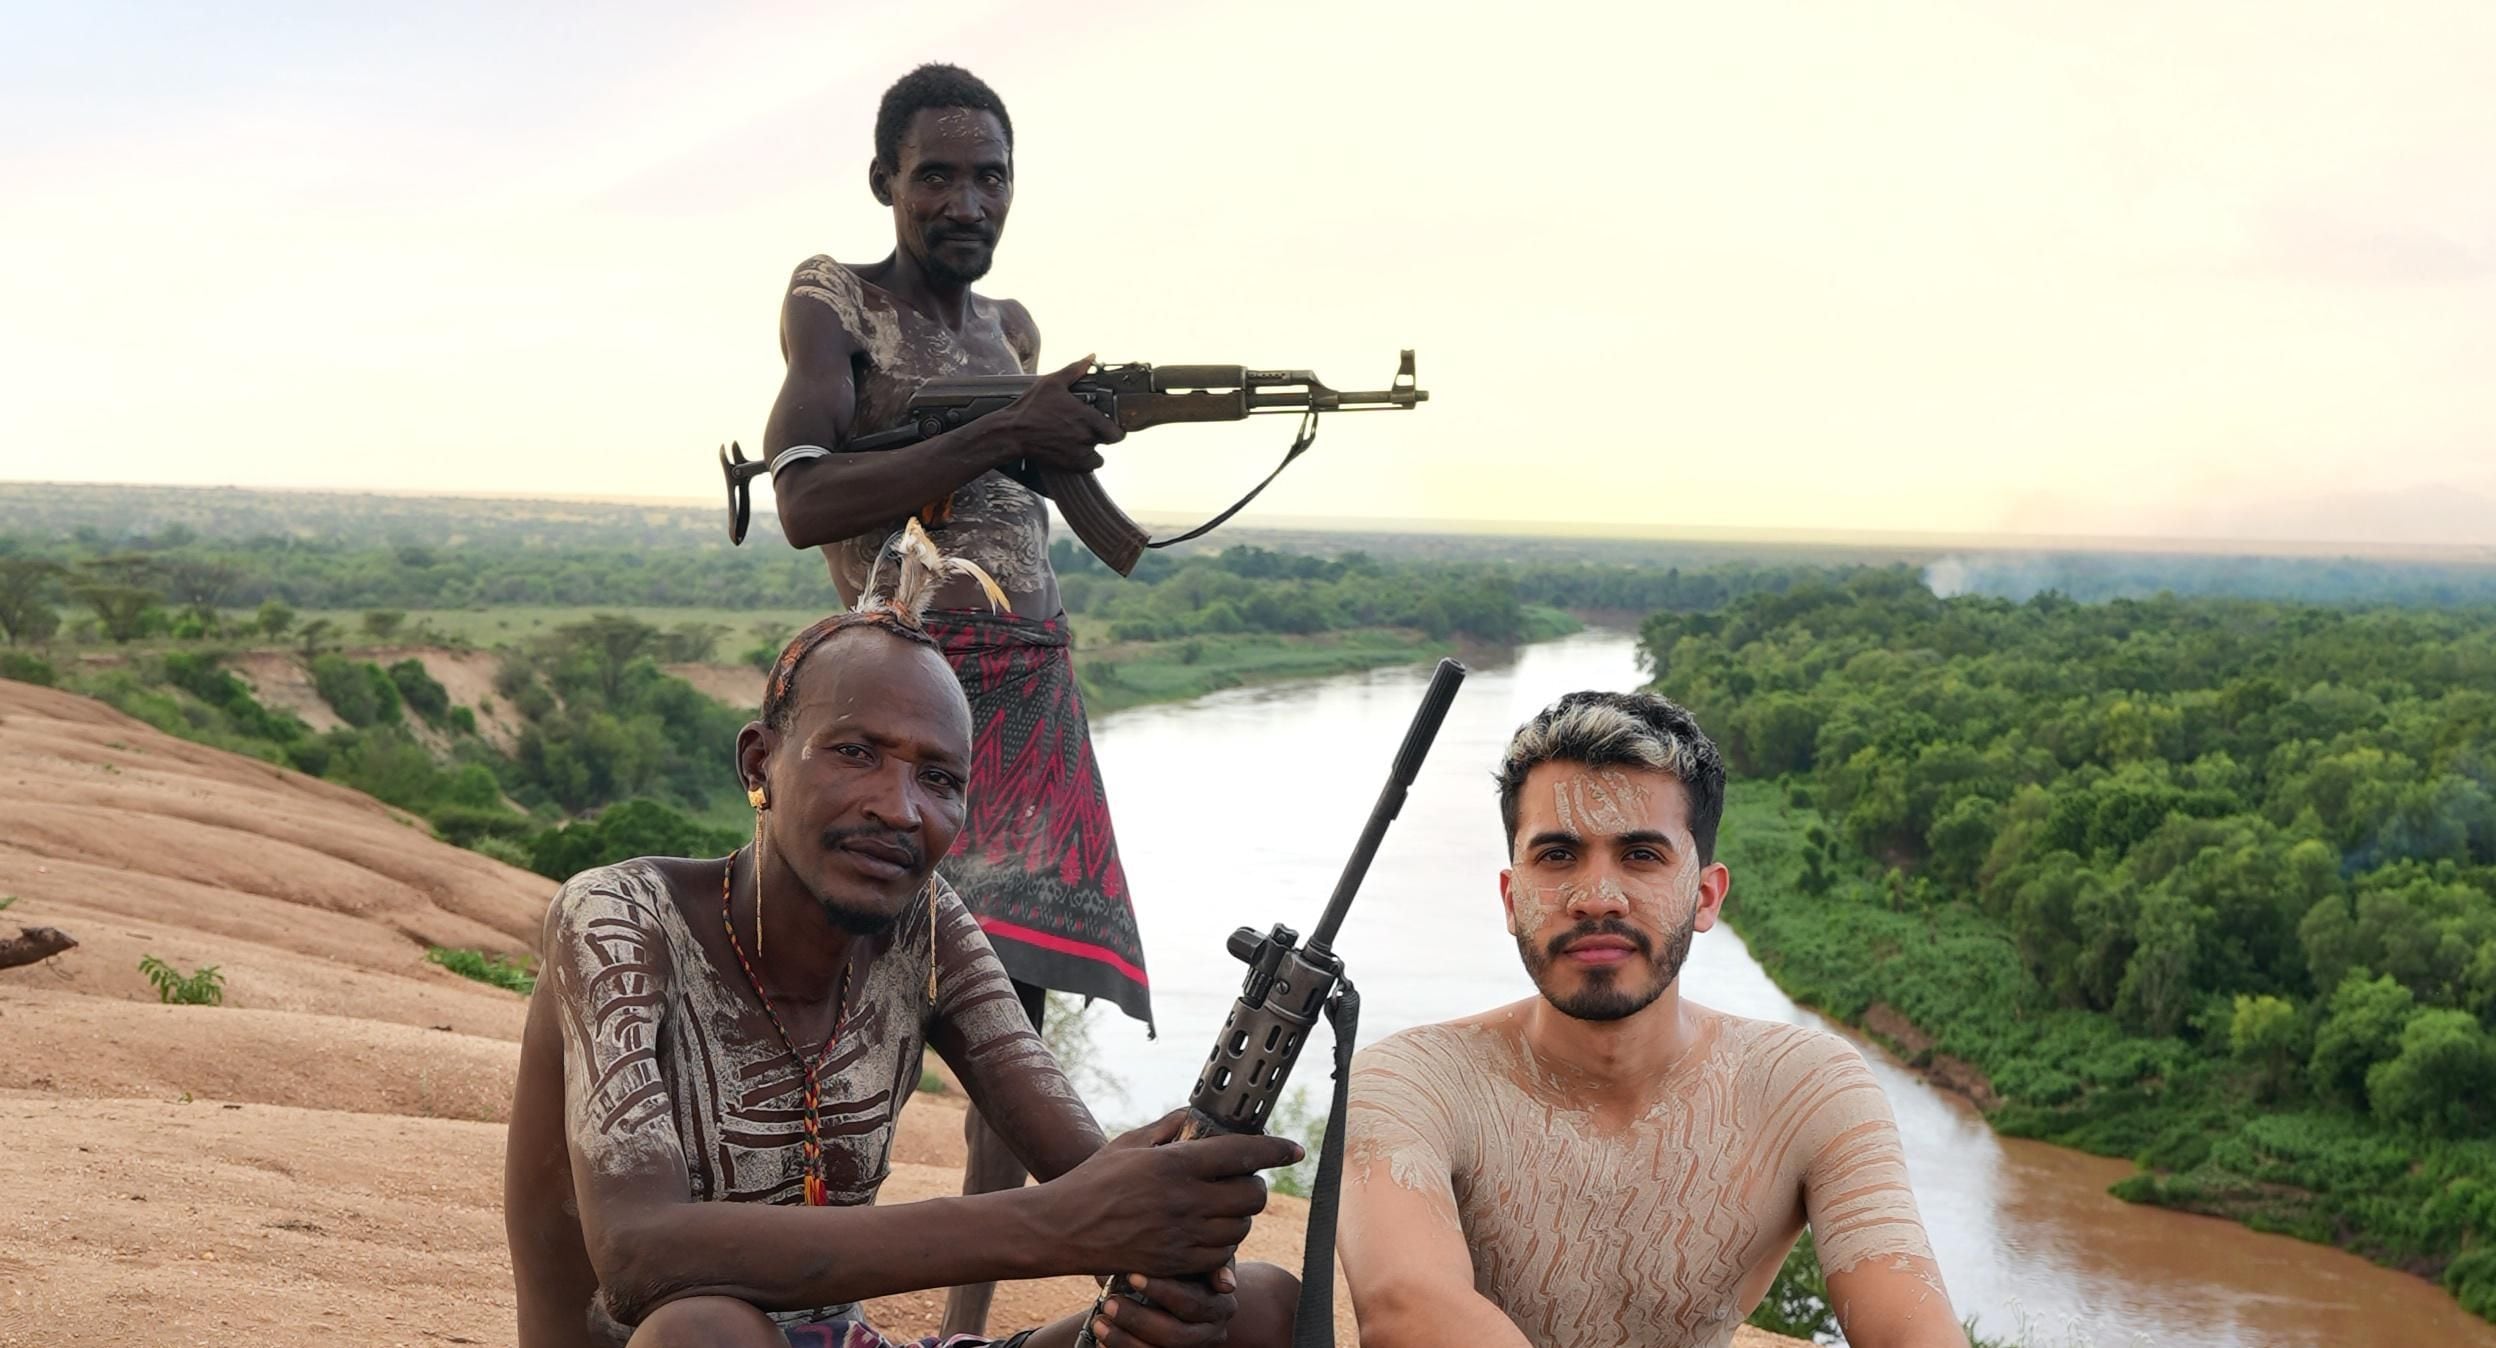 Araya Vlogs convivió con tribu en Etiopía en medio de hombres armados